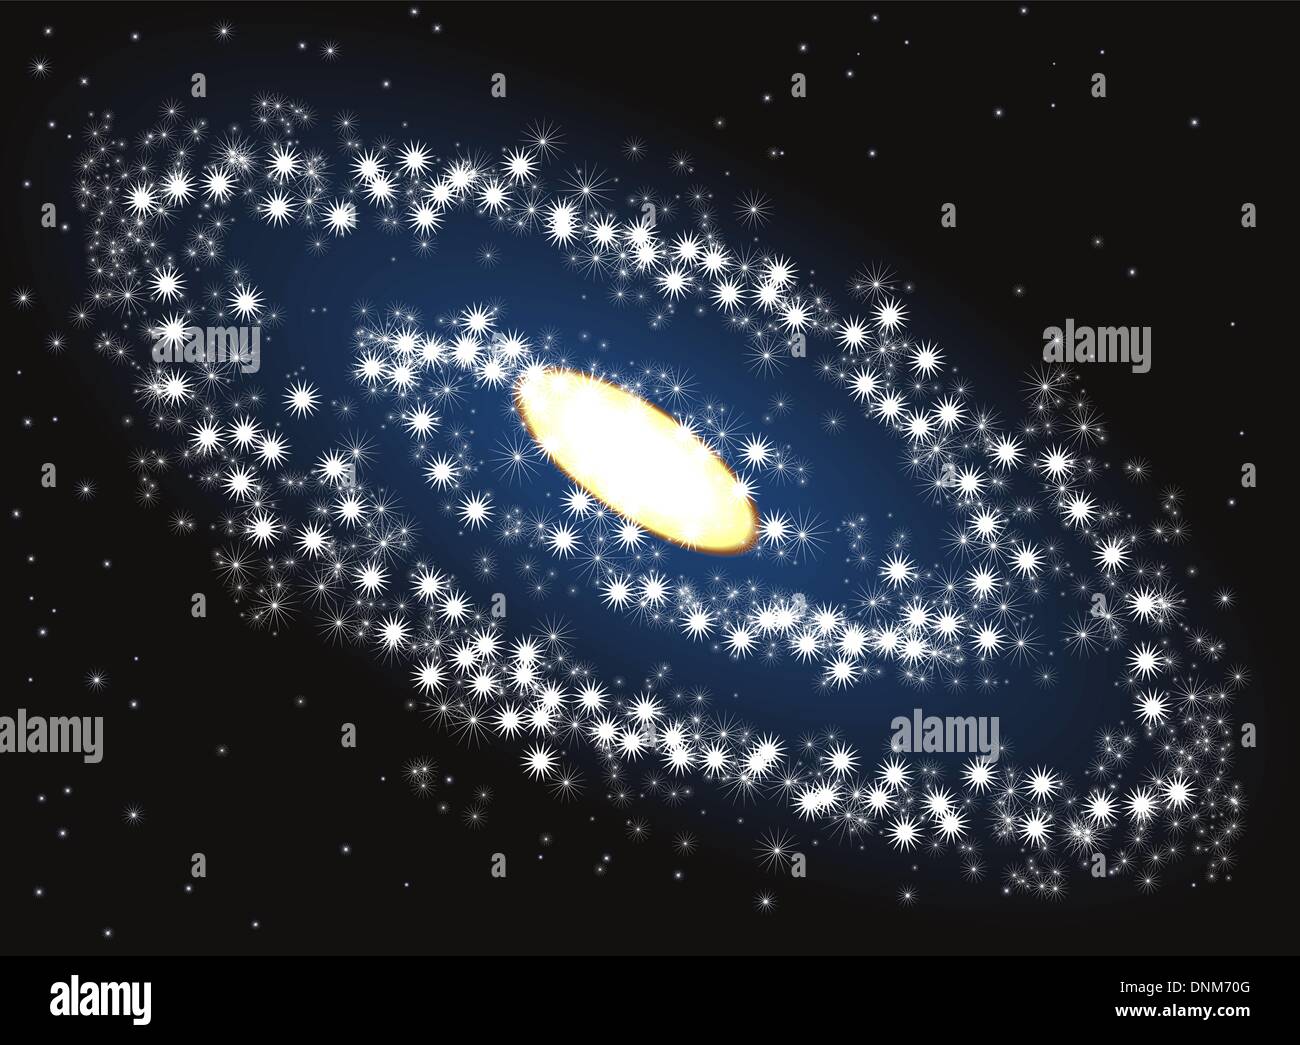 Ilustración de la galaxia en el espacio ultraterrestre Ilustración del Vector